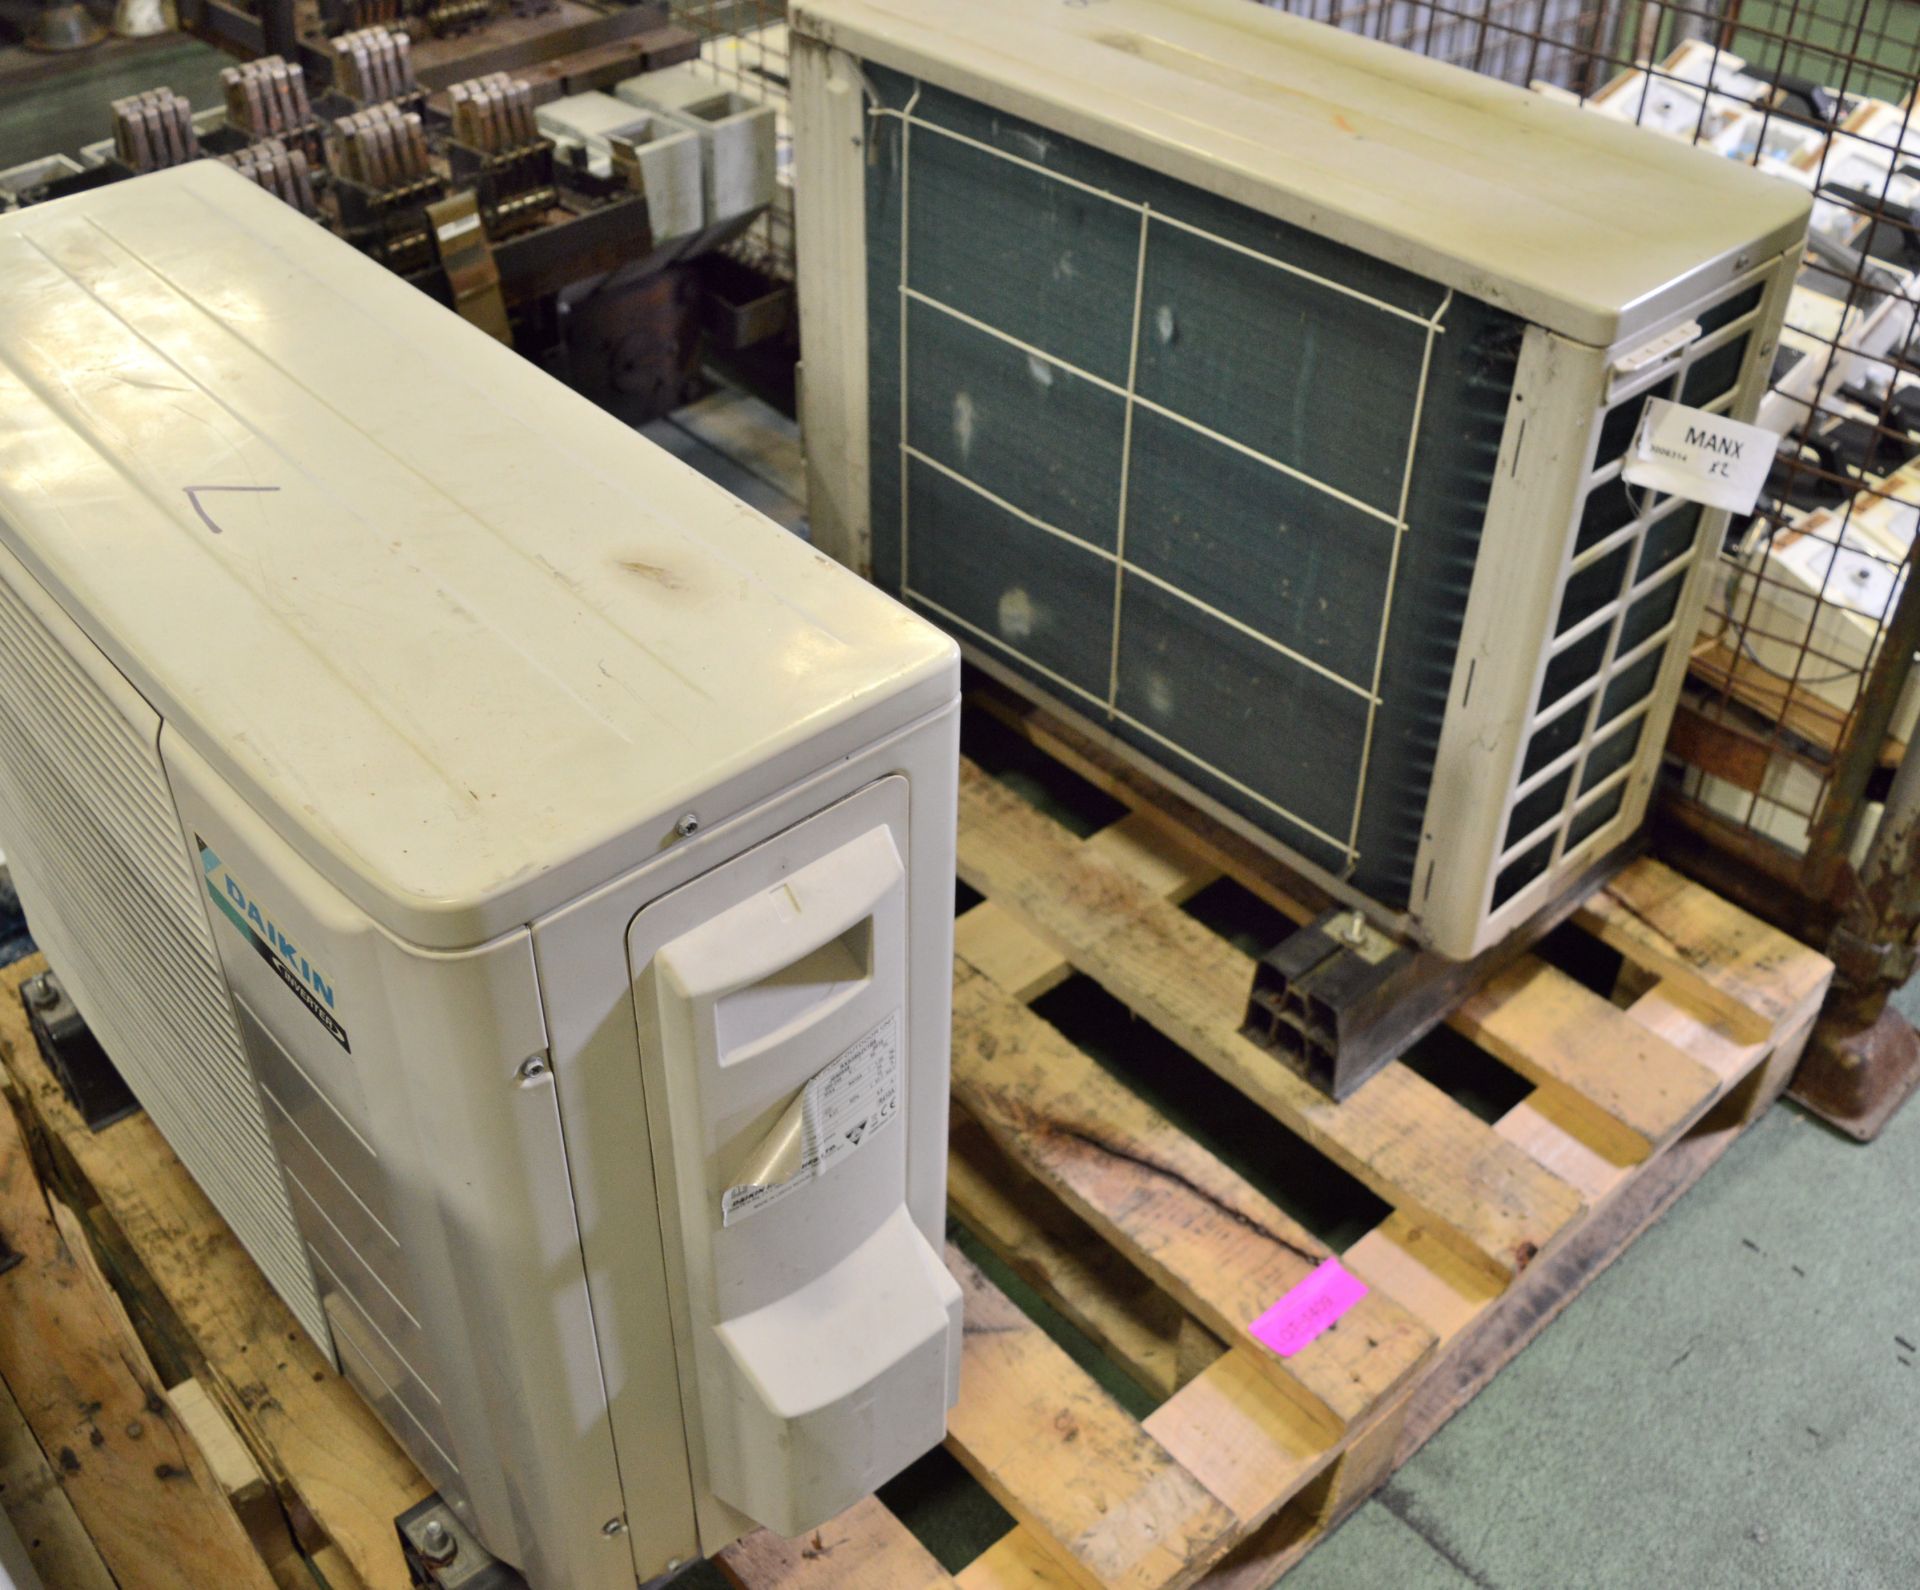 2x Daikin Inverter Air Conditioner Heat Pump Outdoor Units. - Image 2 of 3